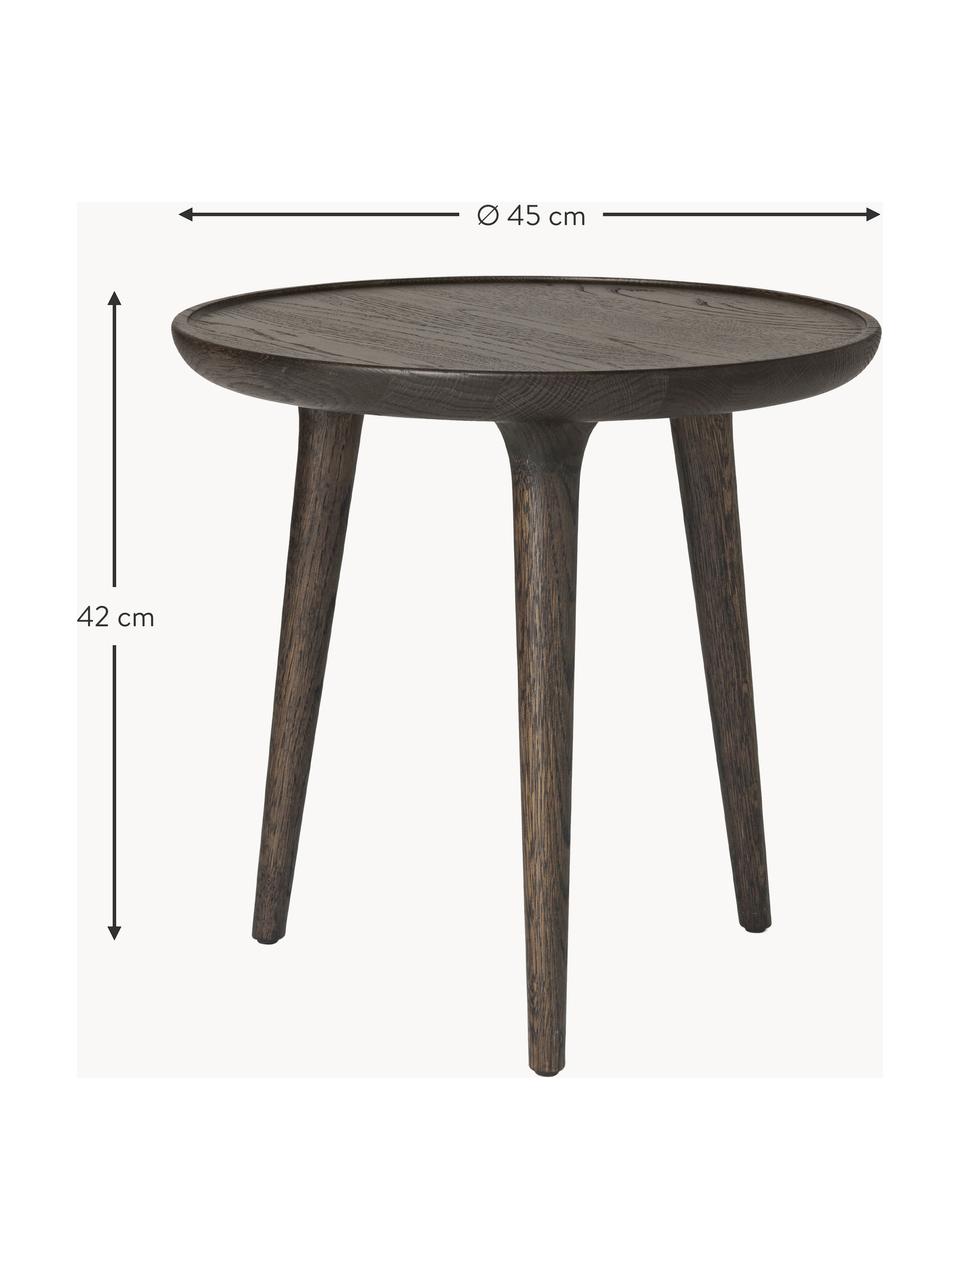 Kulatý odkládací stolek z dubového dřeva Accent, ručně vyrobený, Dubové dřevo

Tento produkt je vyroben z udržitelných zdrojů dřeva s certifikací FSC®., Dubové dřevo, tmavě hnědě lakované, Ø 45 cm, V 42 cm